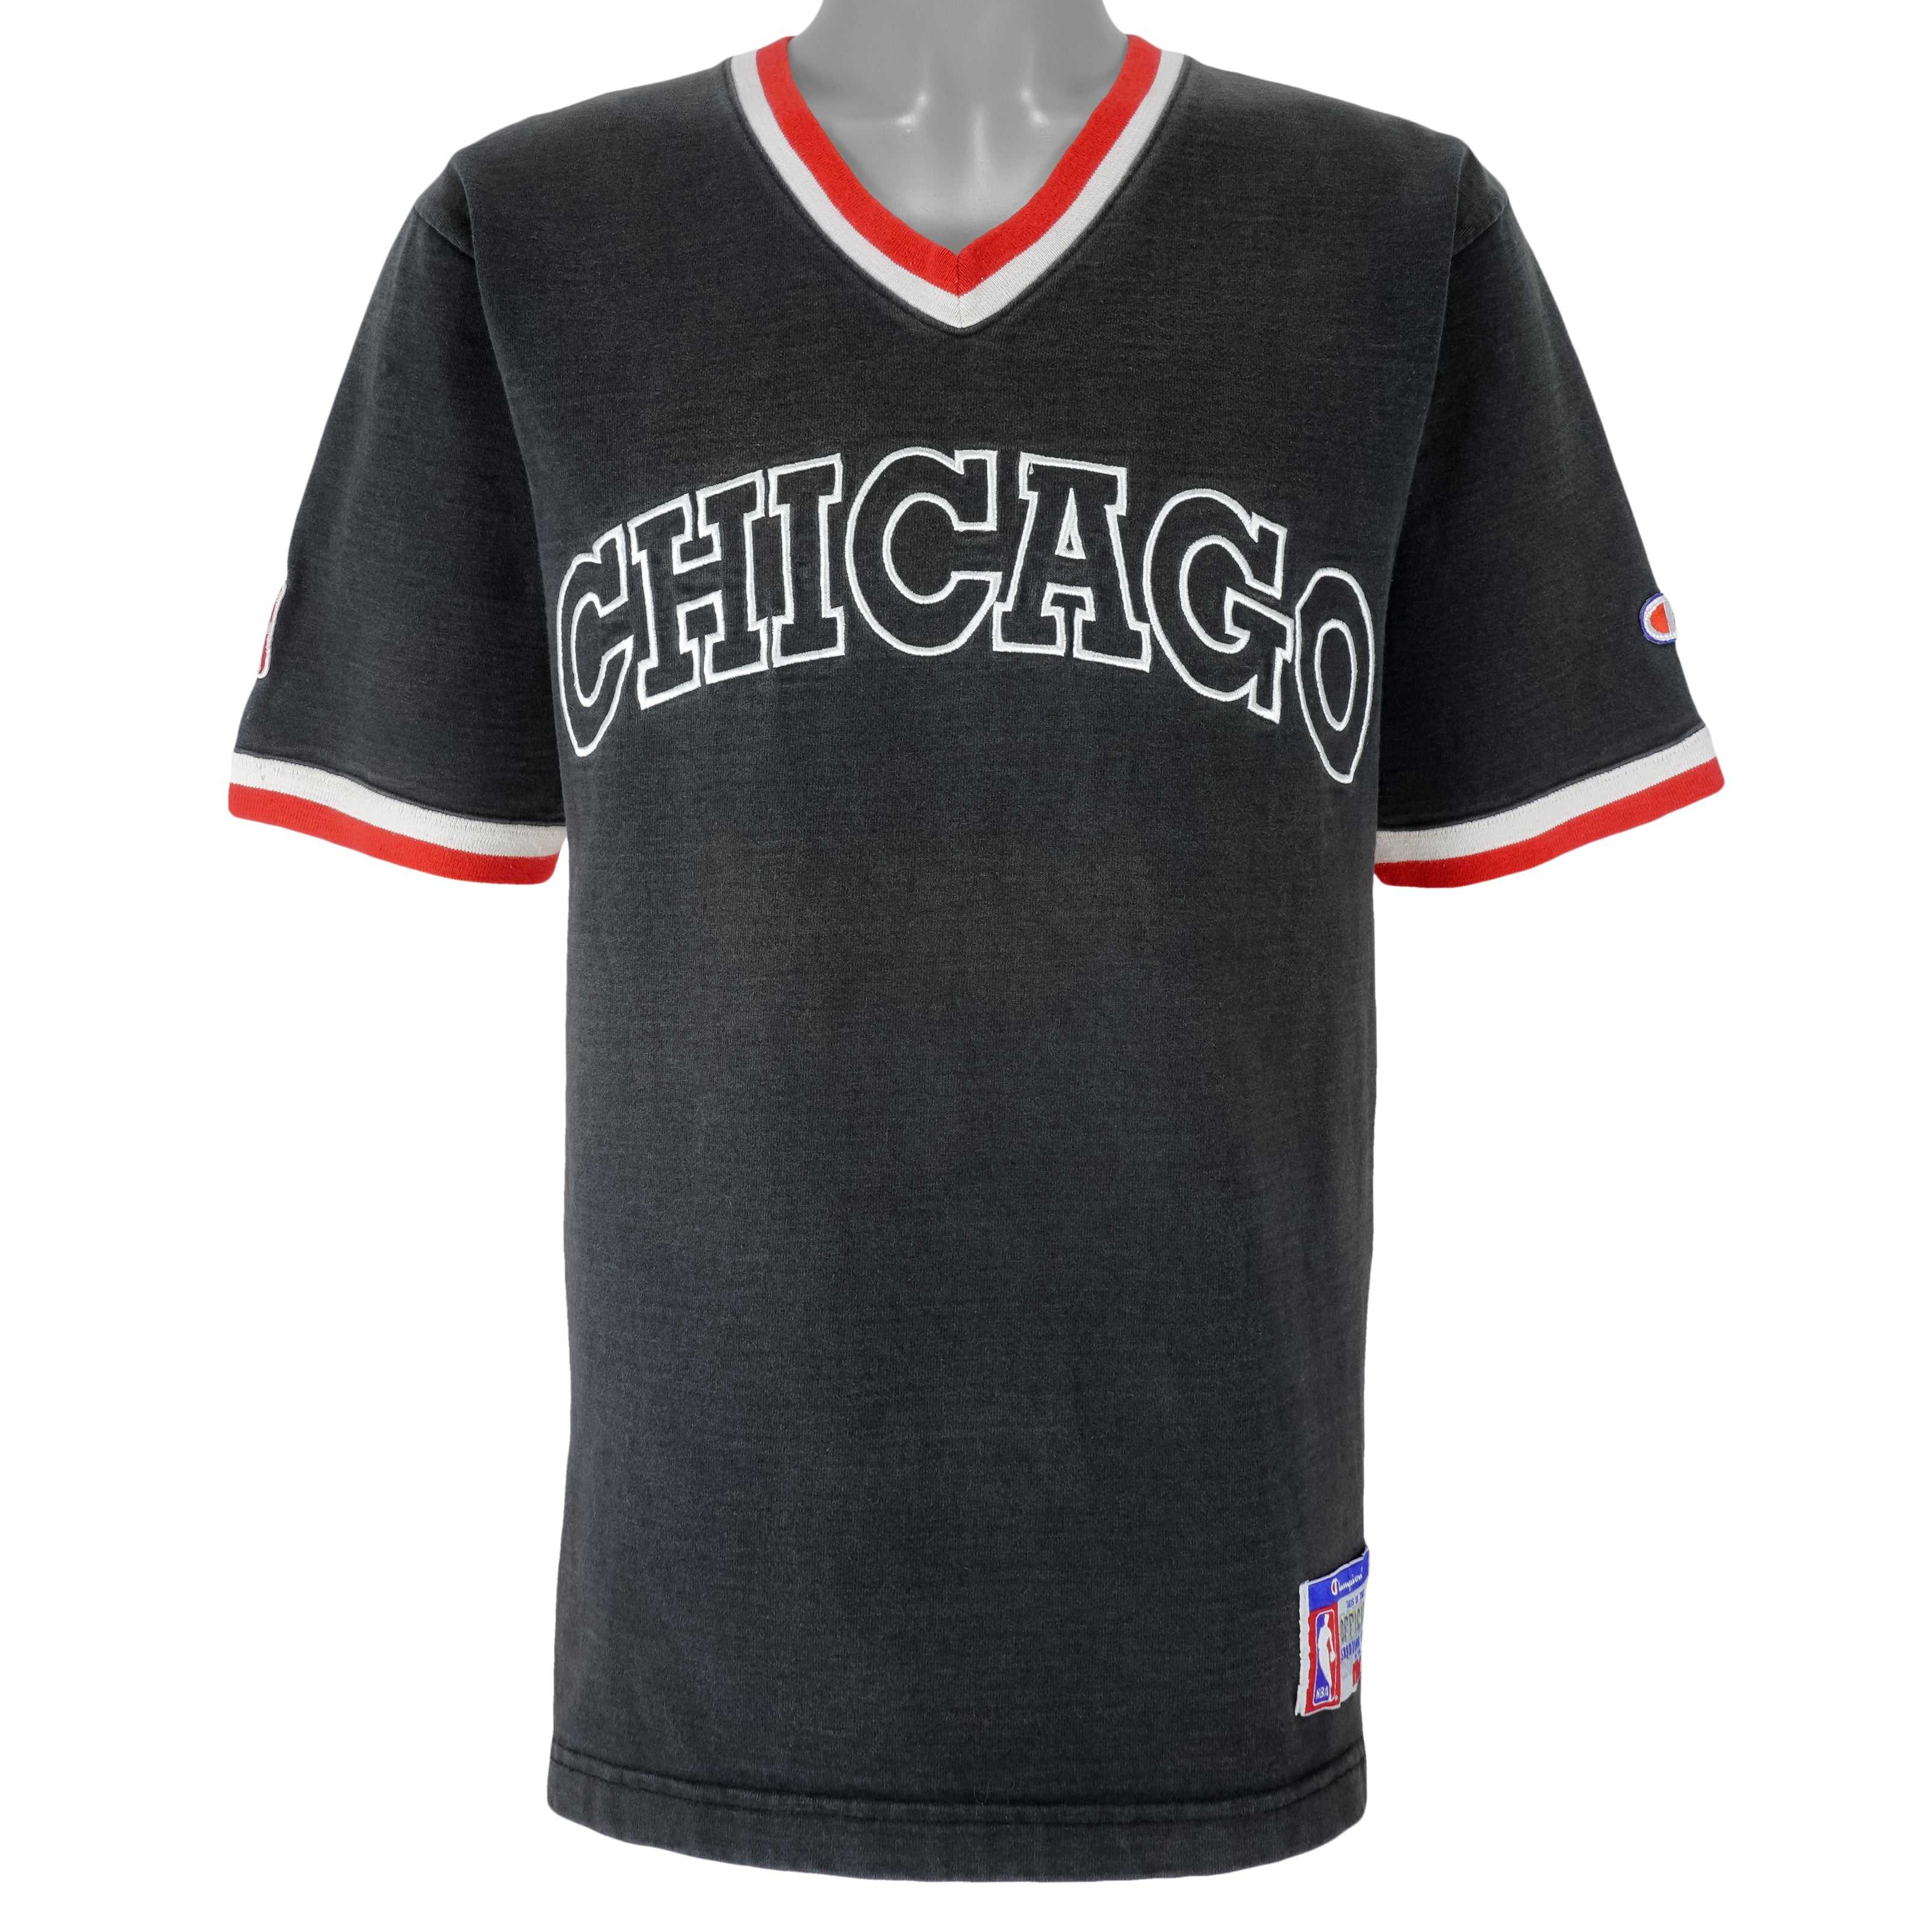 Vintage Chicago-Bulls Shirt N.B.A Champions 90s Benny the Bull Shirt